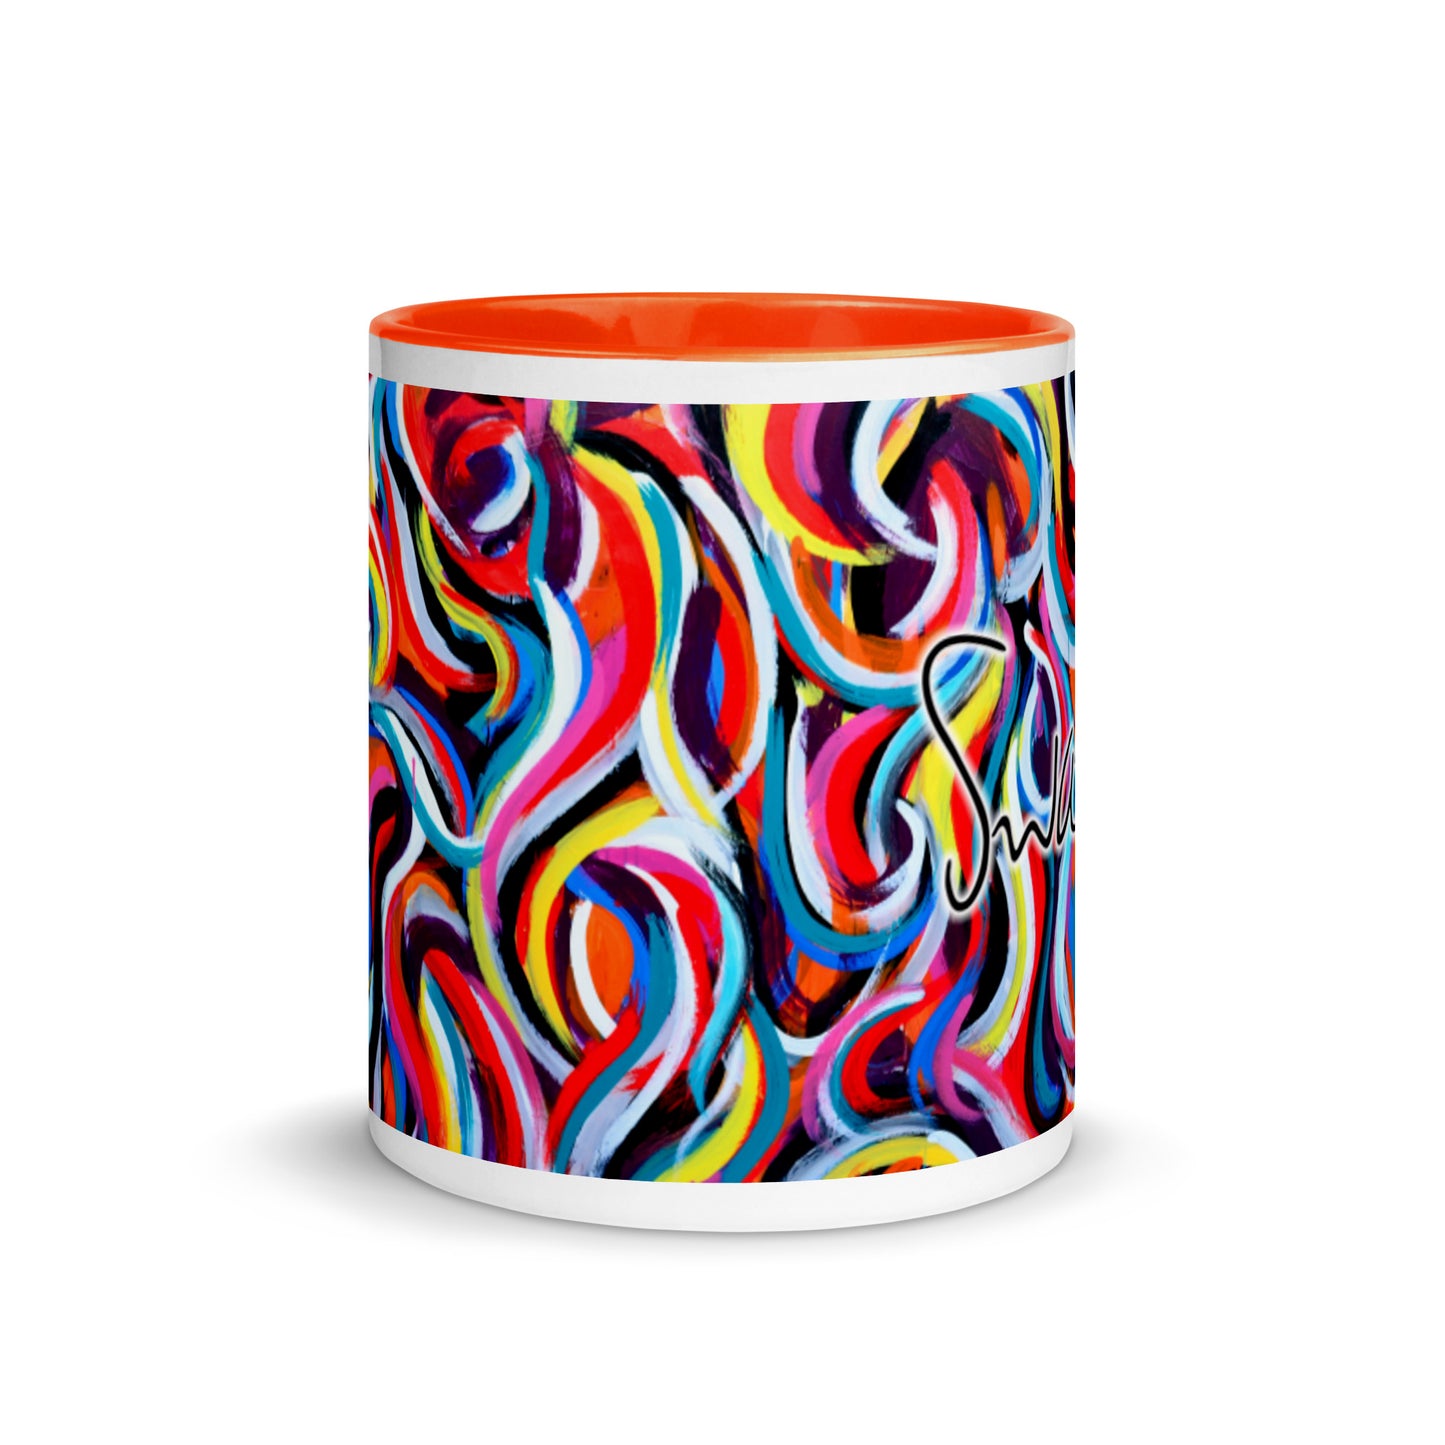 Tasse mit farbiger Innenseite – mehrfarbiges Wirbeldesign